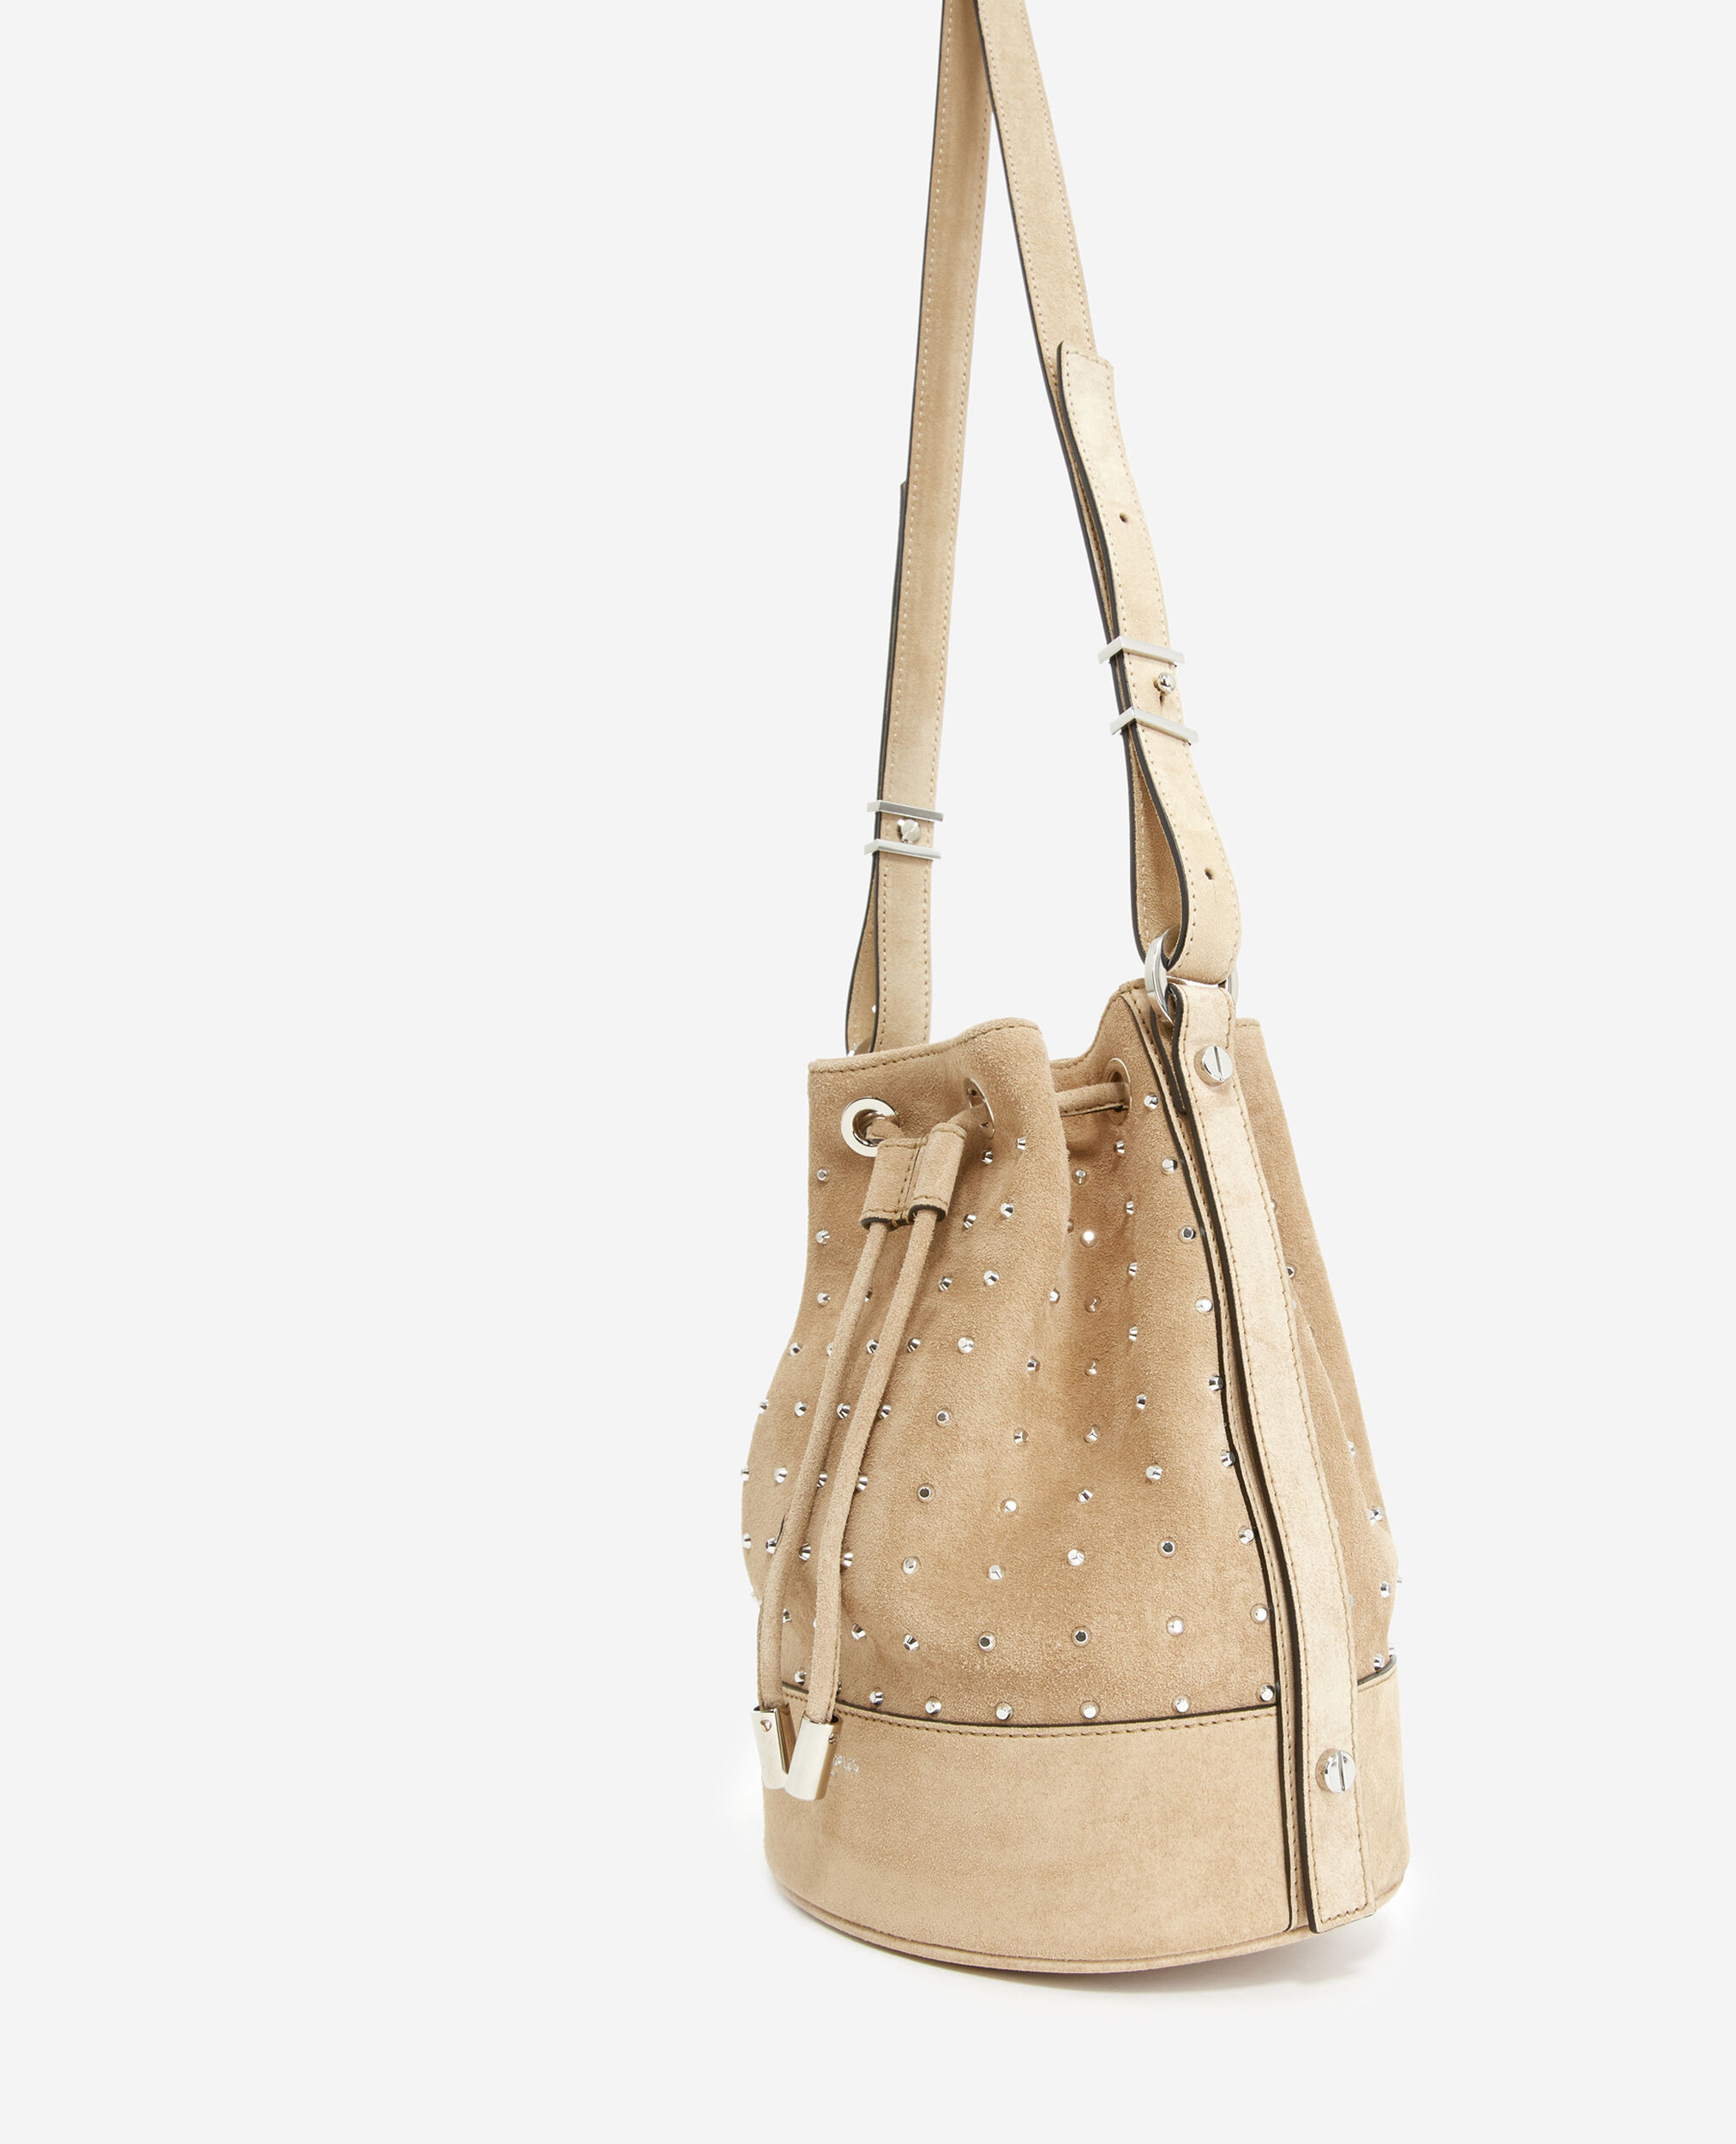 Studded Medium Tina bag in beige, BEIGE, hi-res image number null